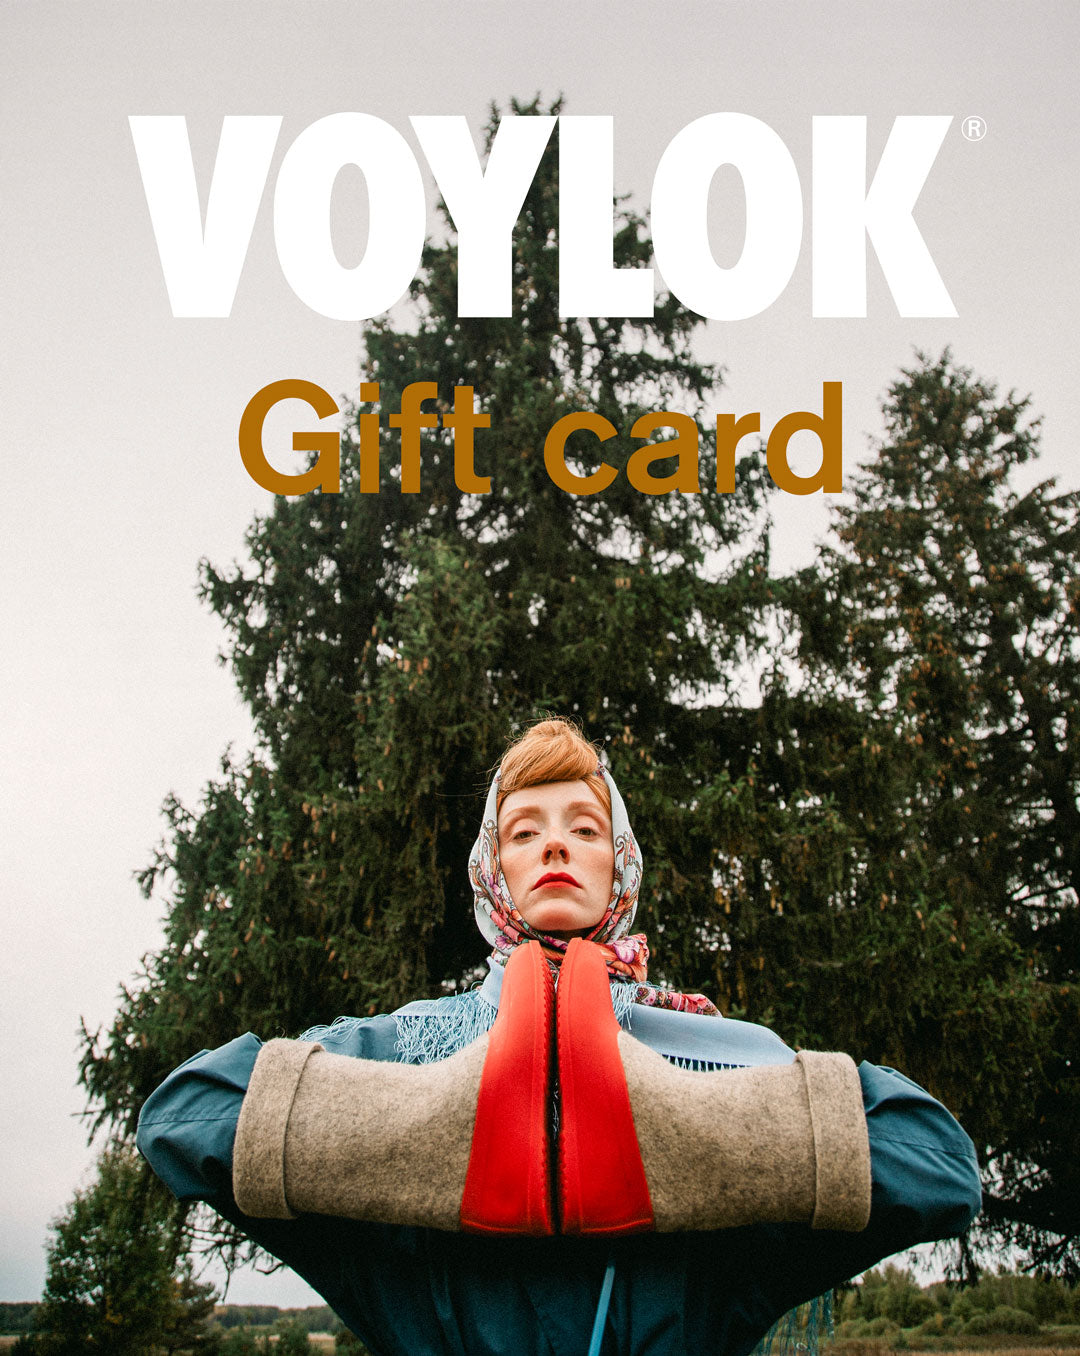 VOYLOK Gift Card